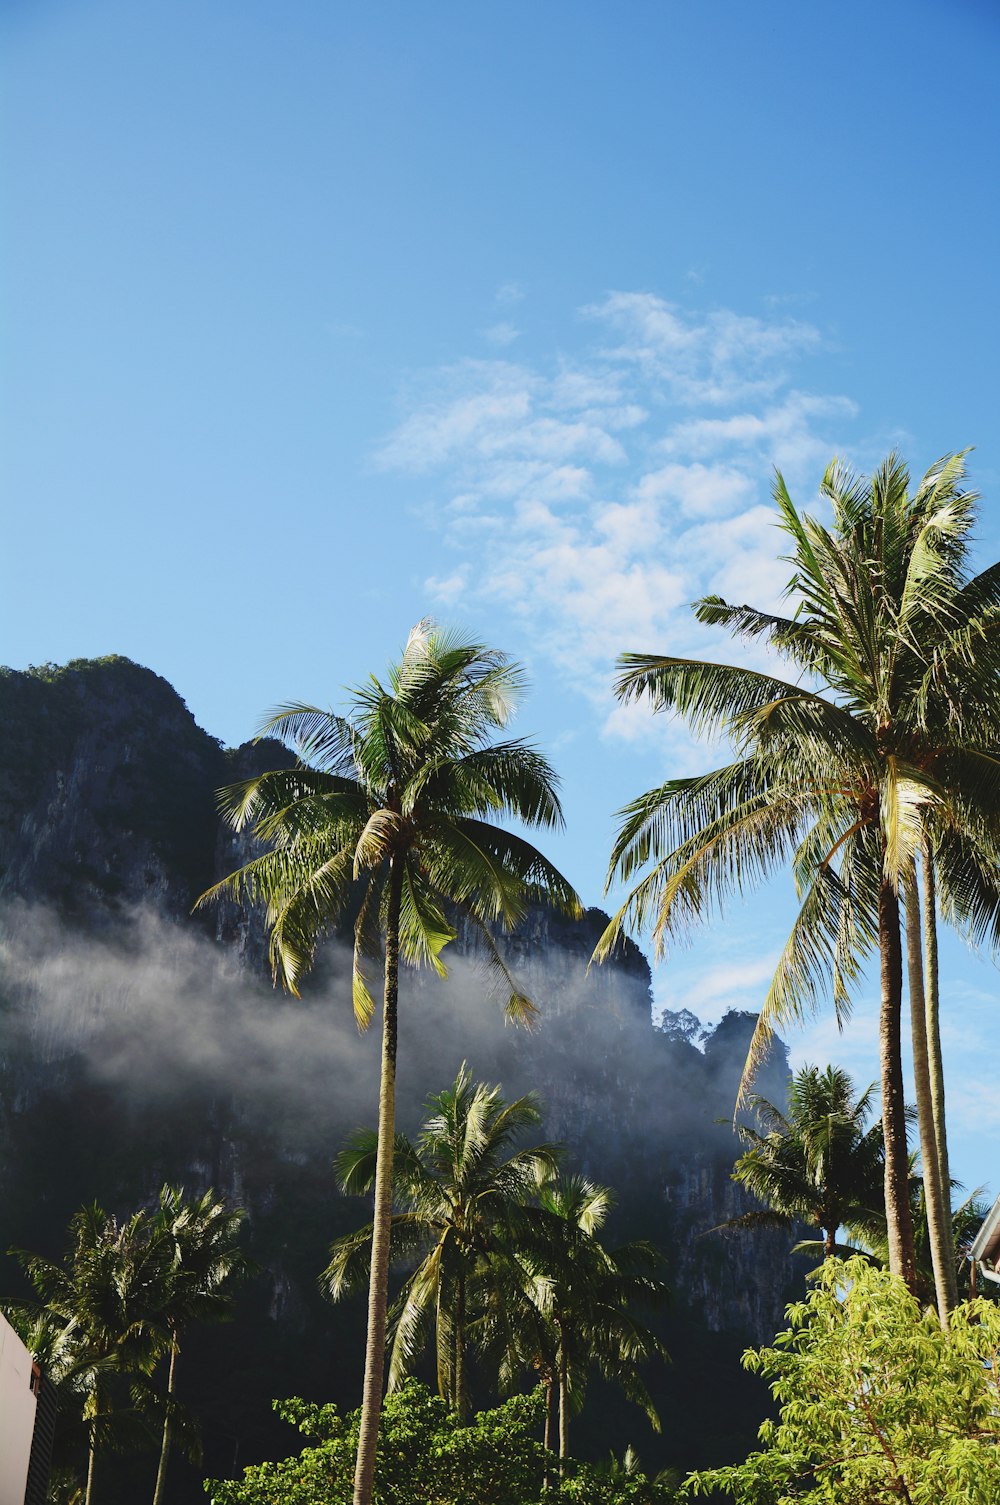 fotografia ad angolo basso di alberi di cocco sotto nuvole bianche durante il giorno